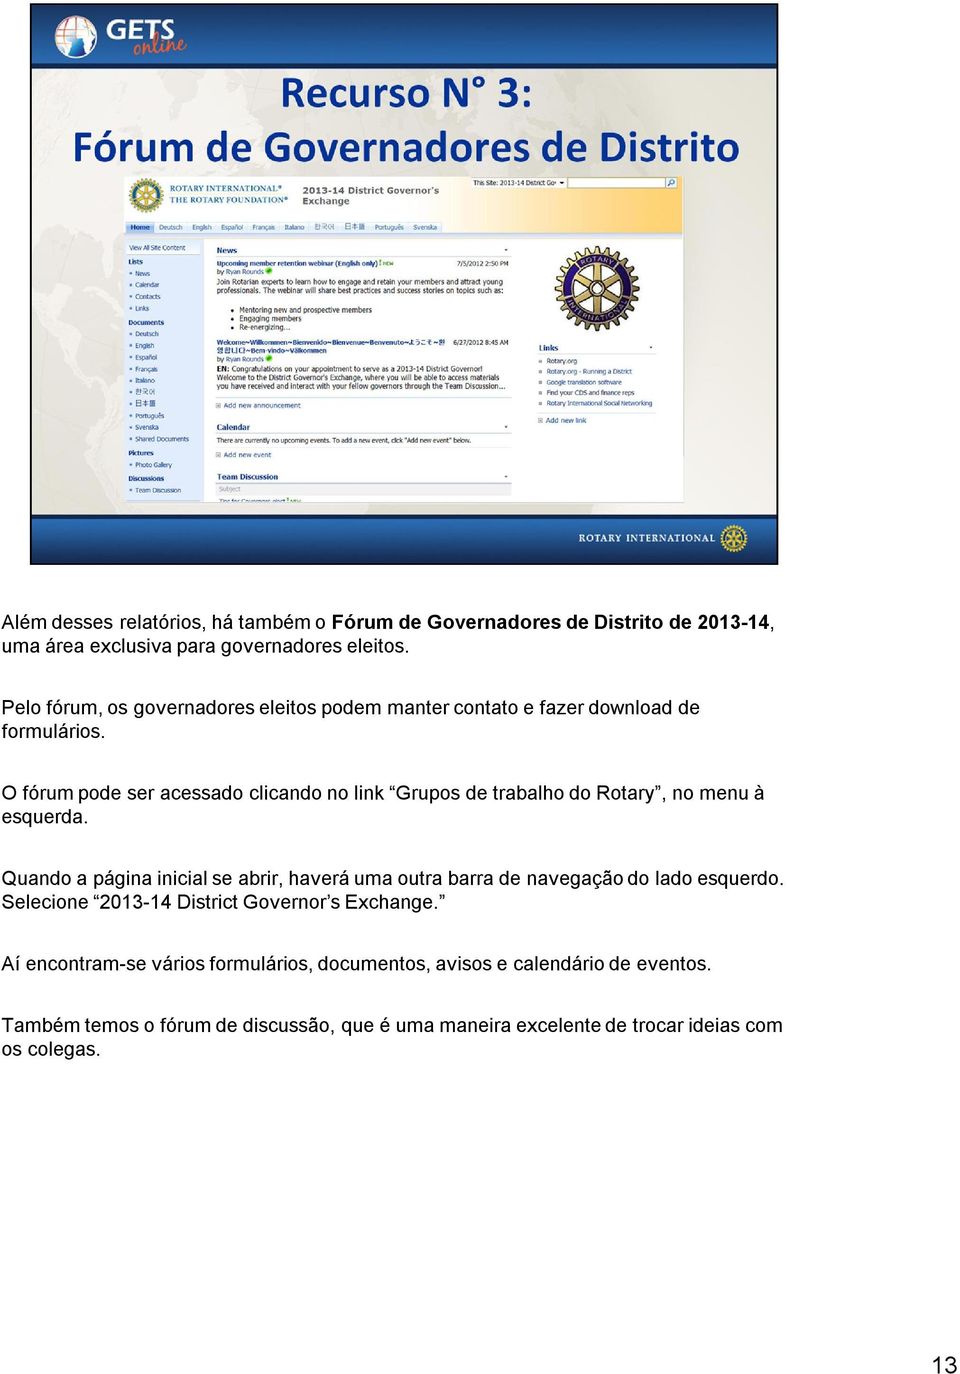 O fórum pode ser acessado clicando no link Grupos de trabalho do Rotary, no menu à esquerda.